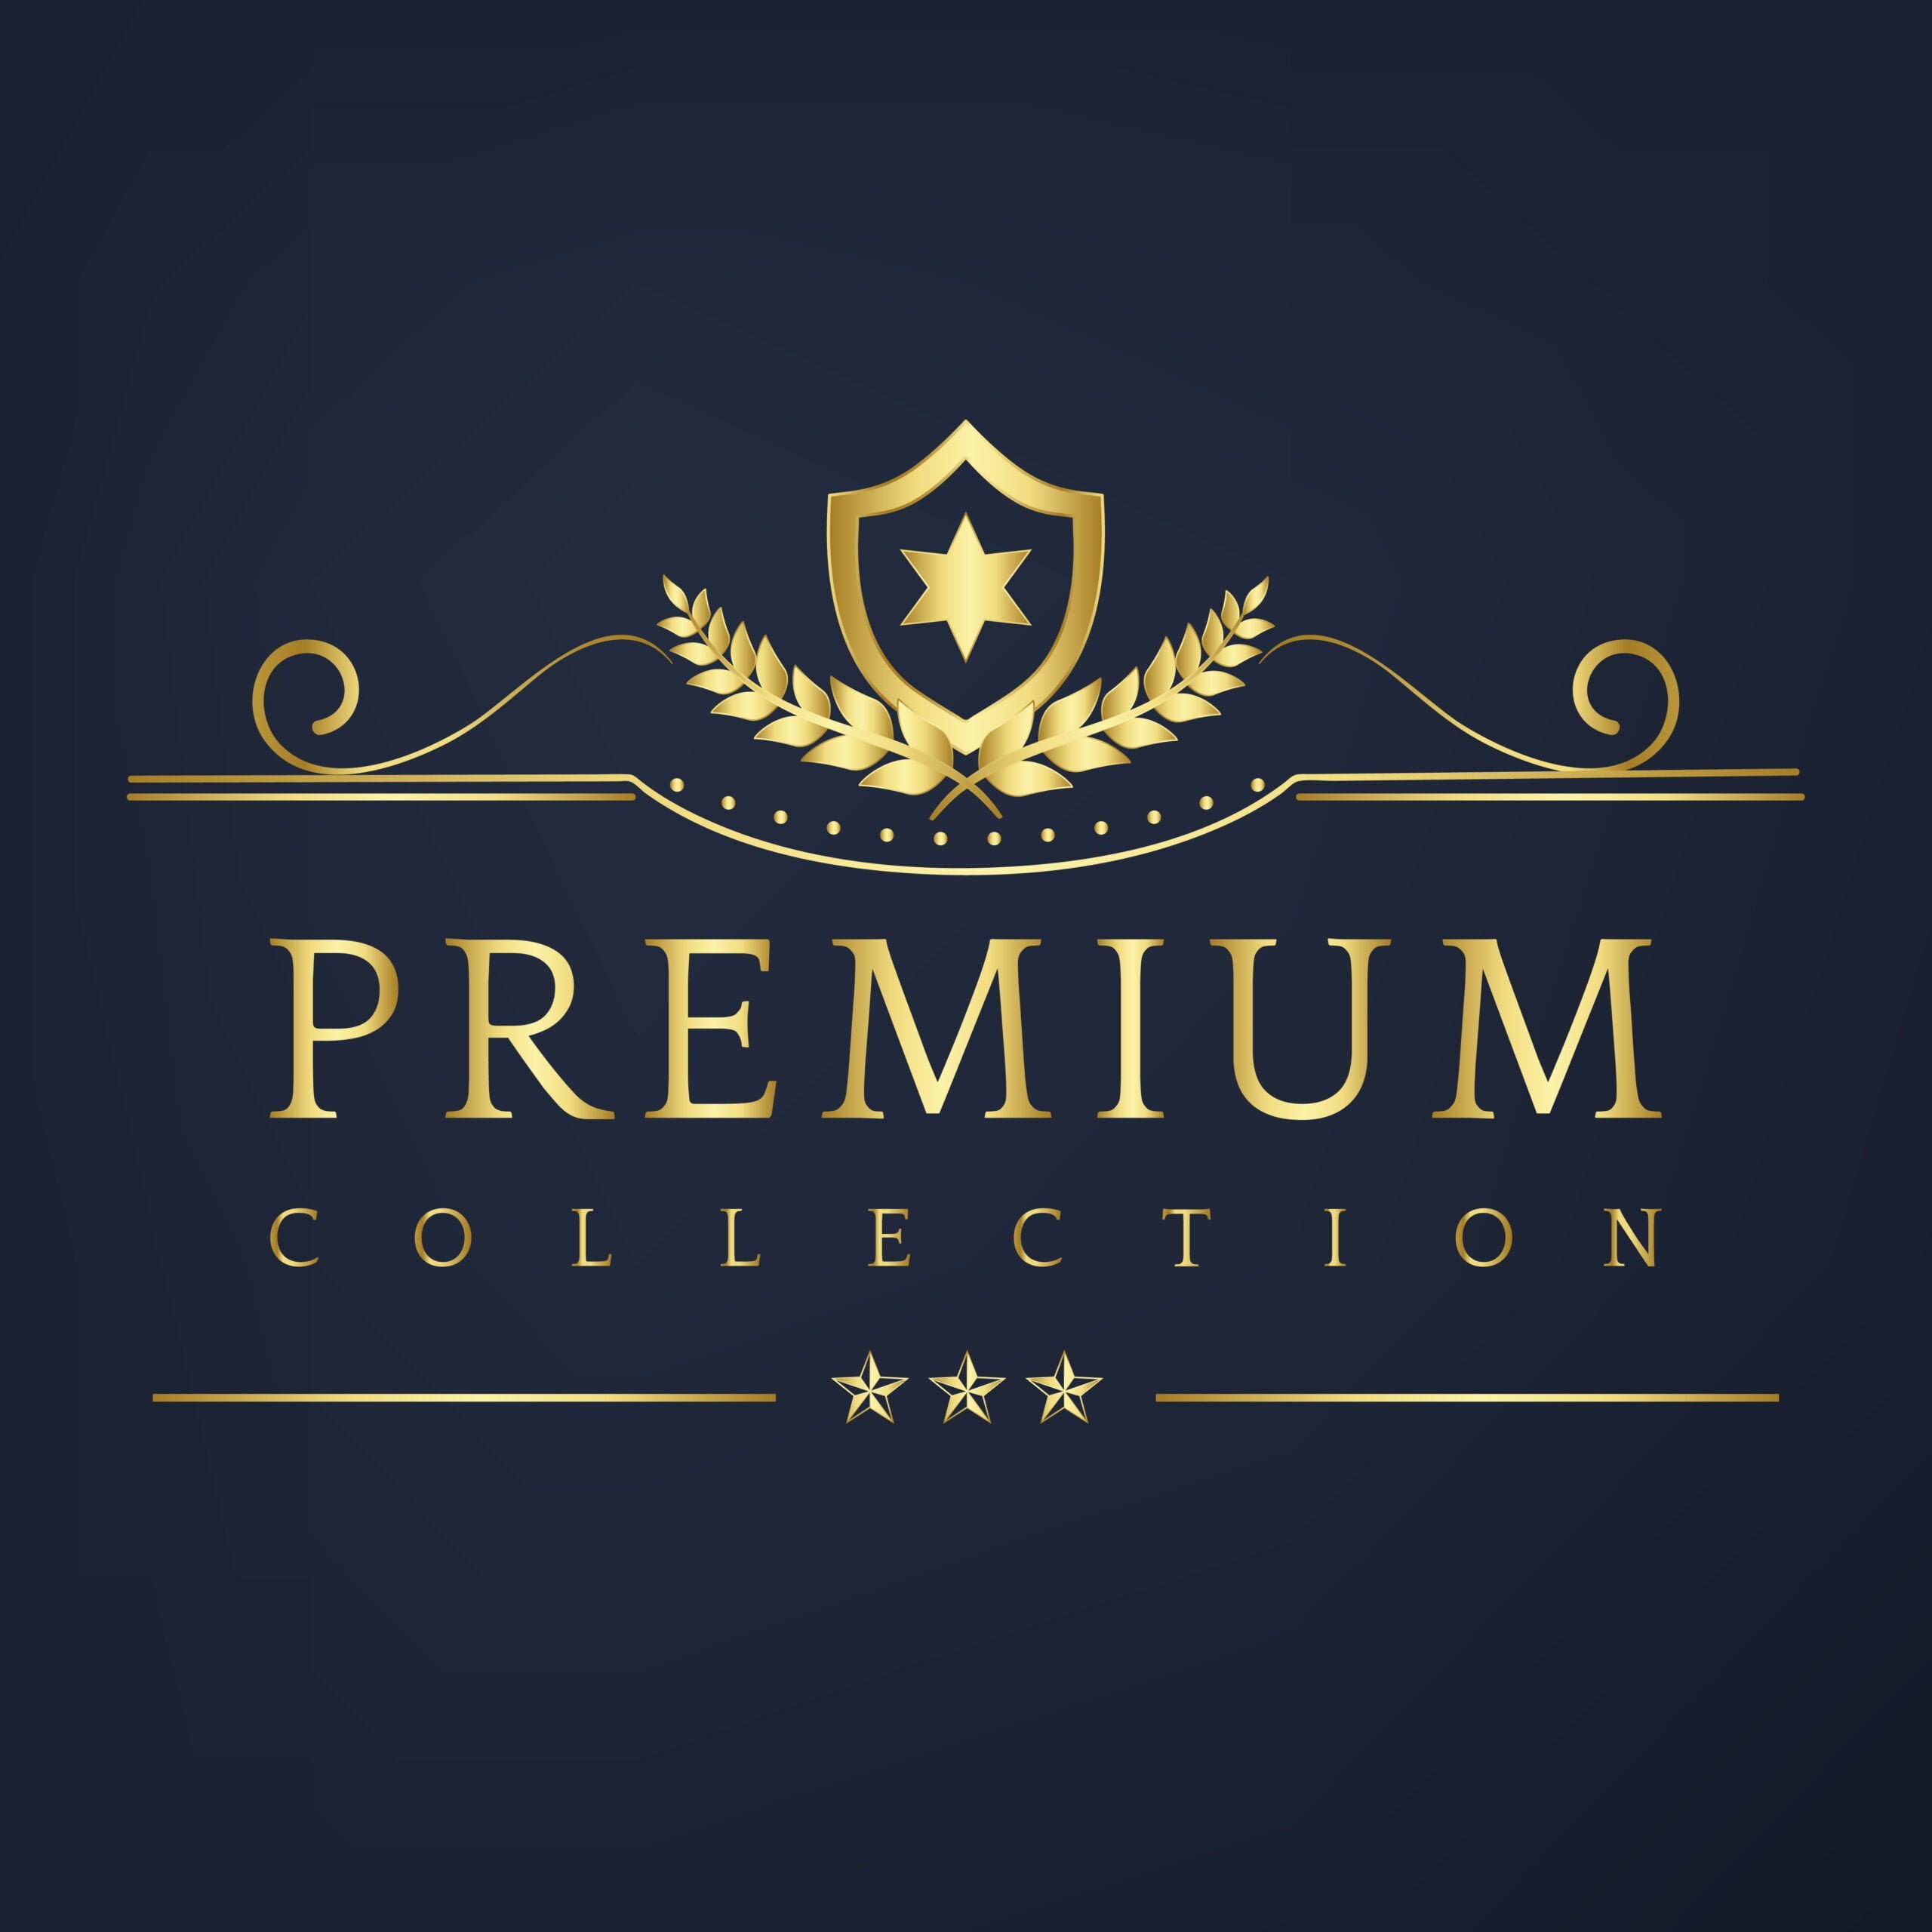 Premium collection